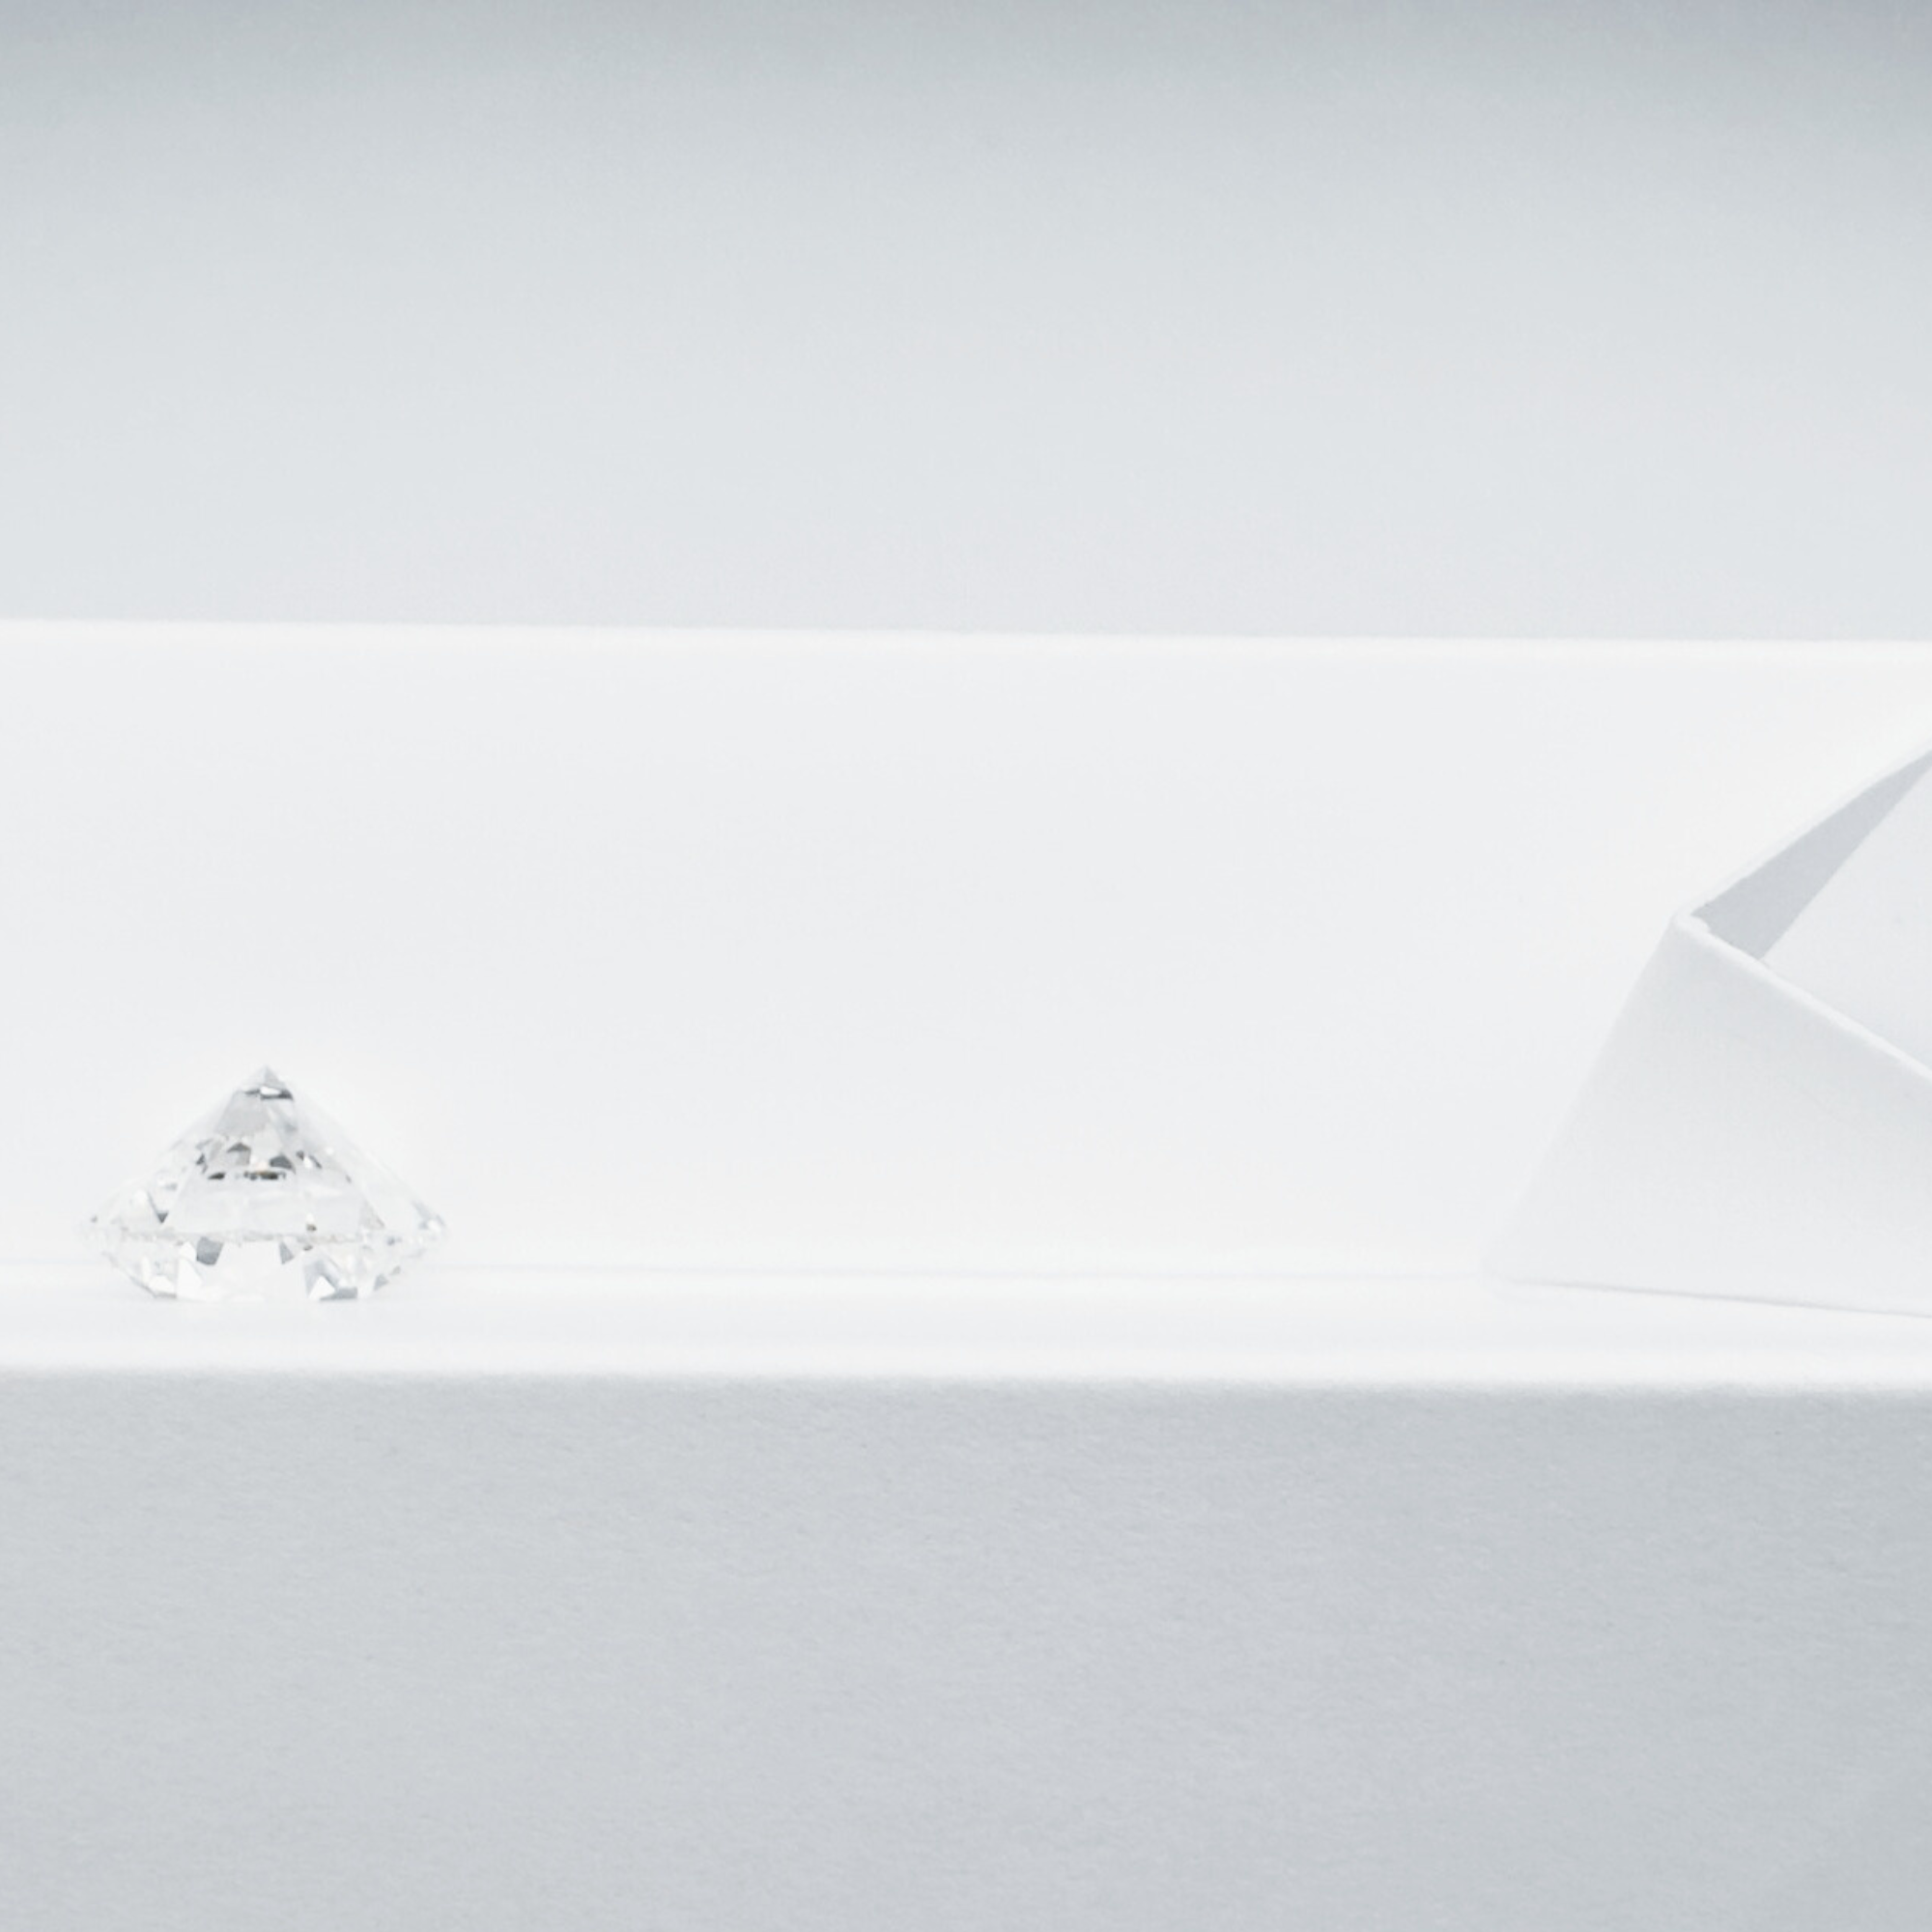 Foldepapir til evaluering af hvide diamanters farve (10 stk.)